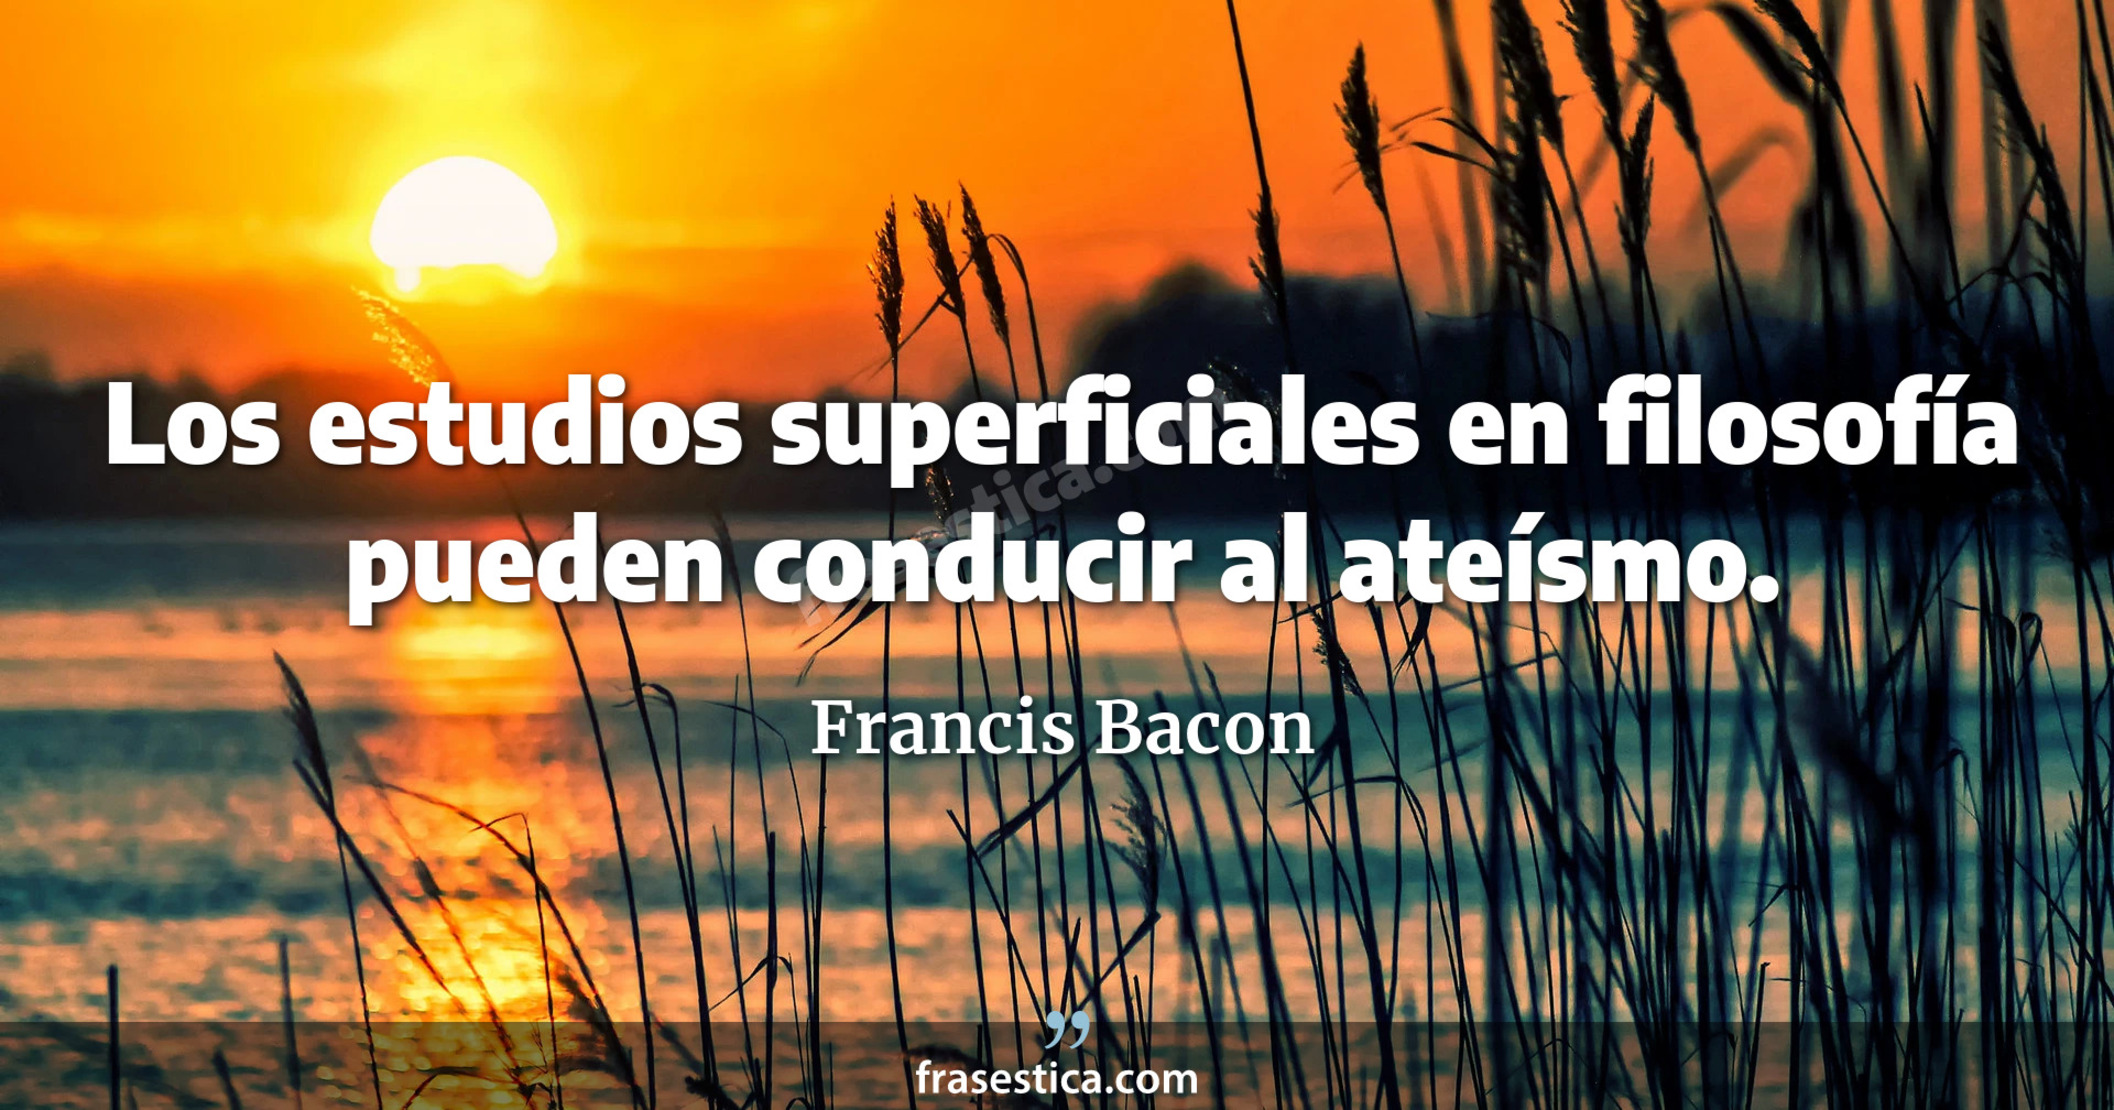 Los estudios superficiales en filosofía pueden conducir al ateísmo. - Francis Bacon